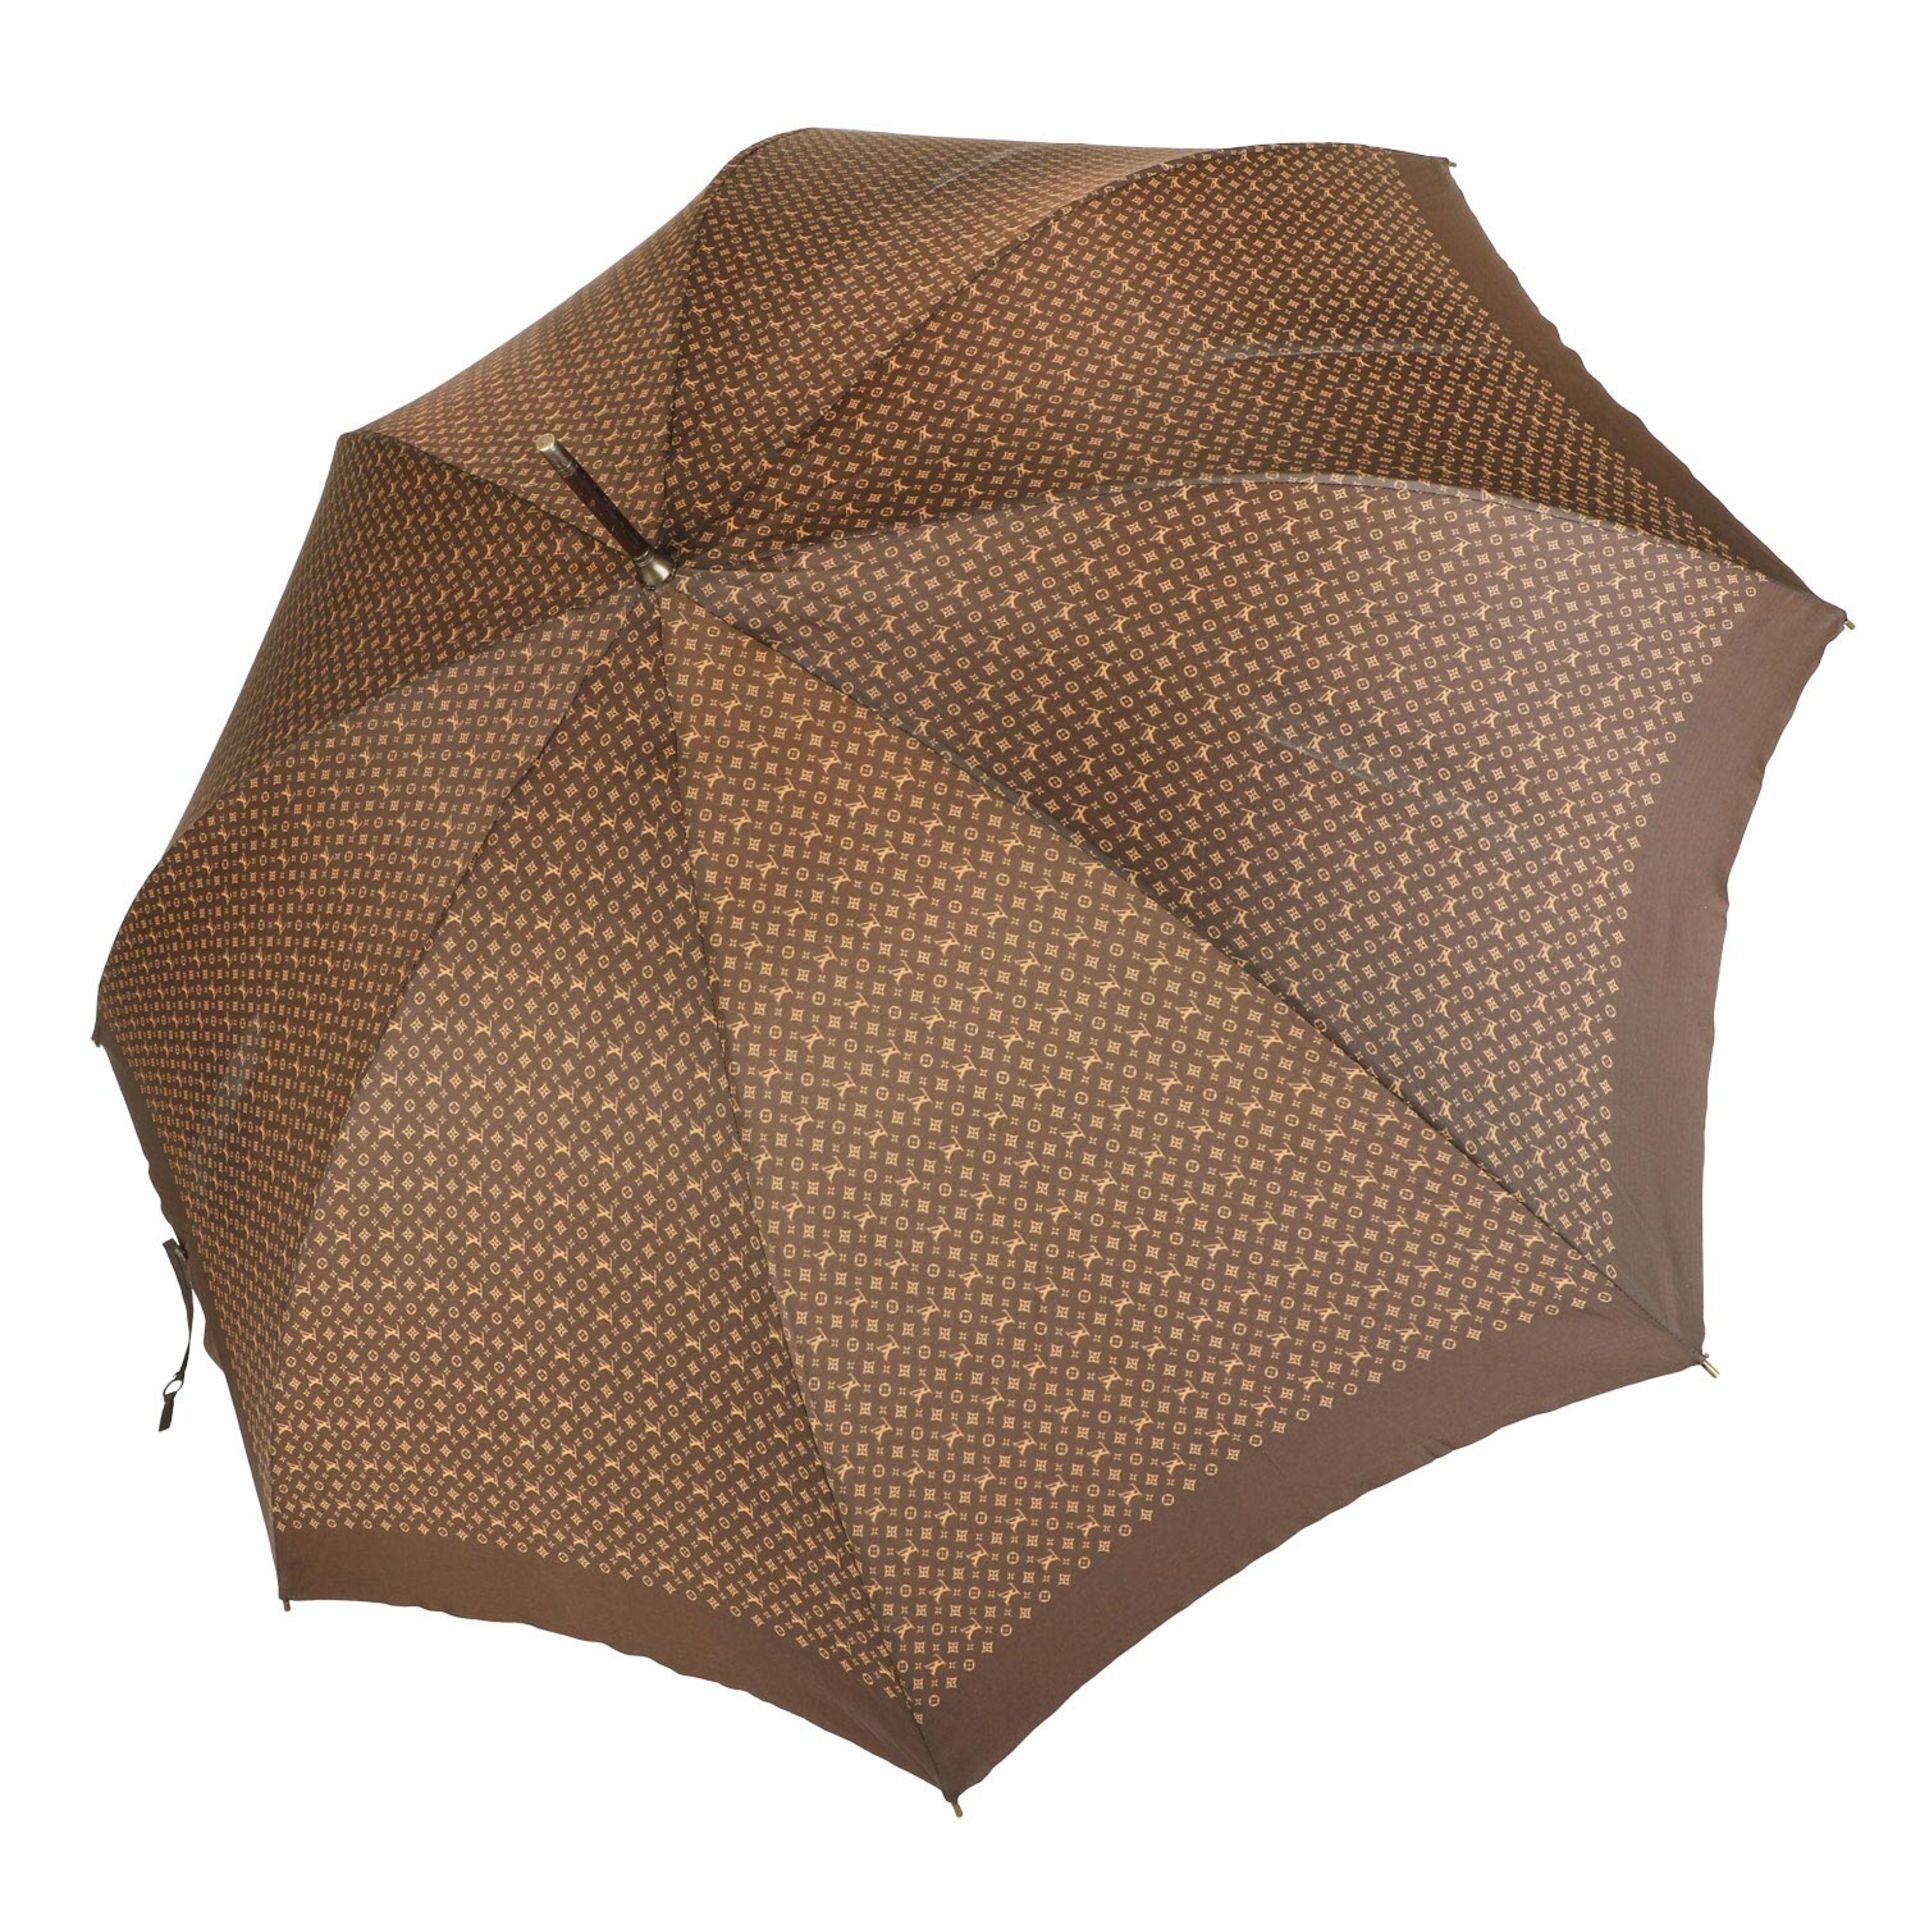 LOUIS VUITTON VINTAGE Regenschirm "PARAPLUIE MONOGRAM", Wohl 80er Jahre. - Bild 4 aus 4